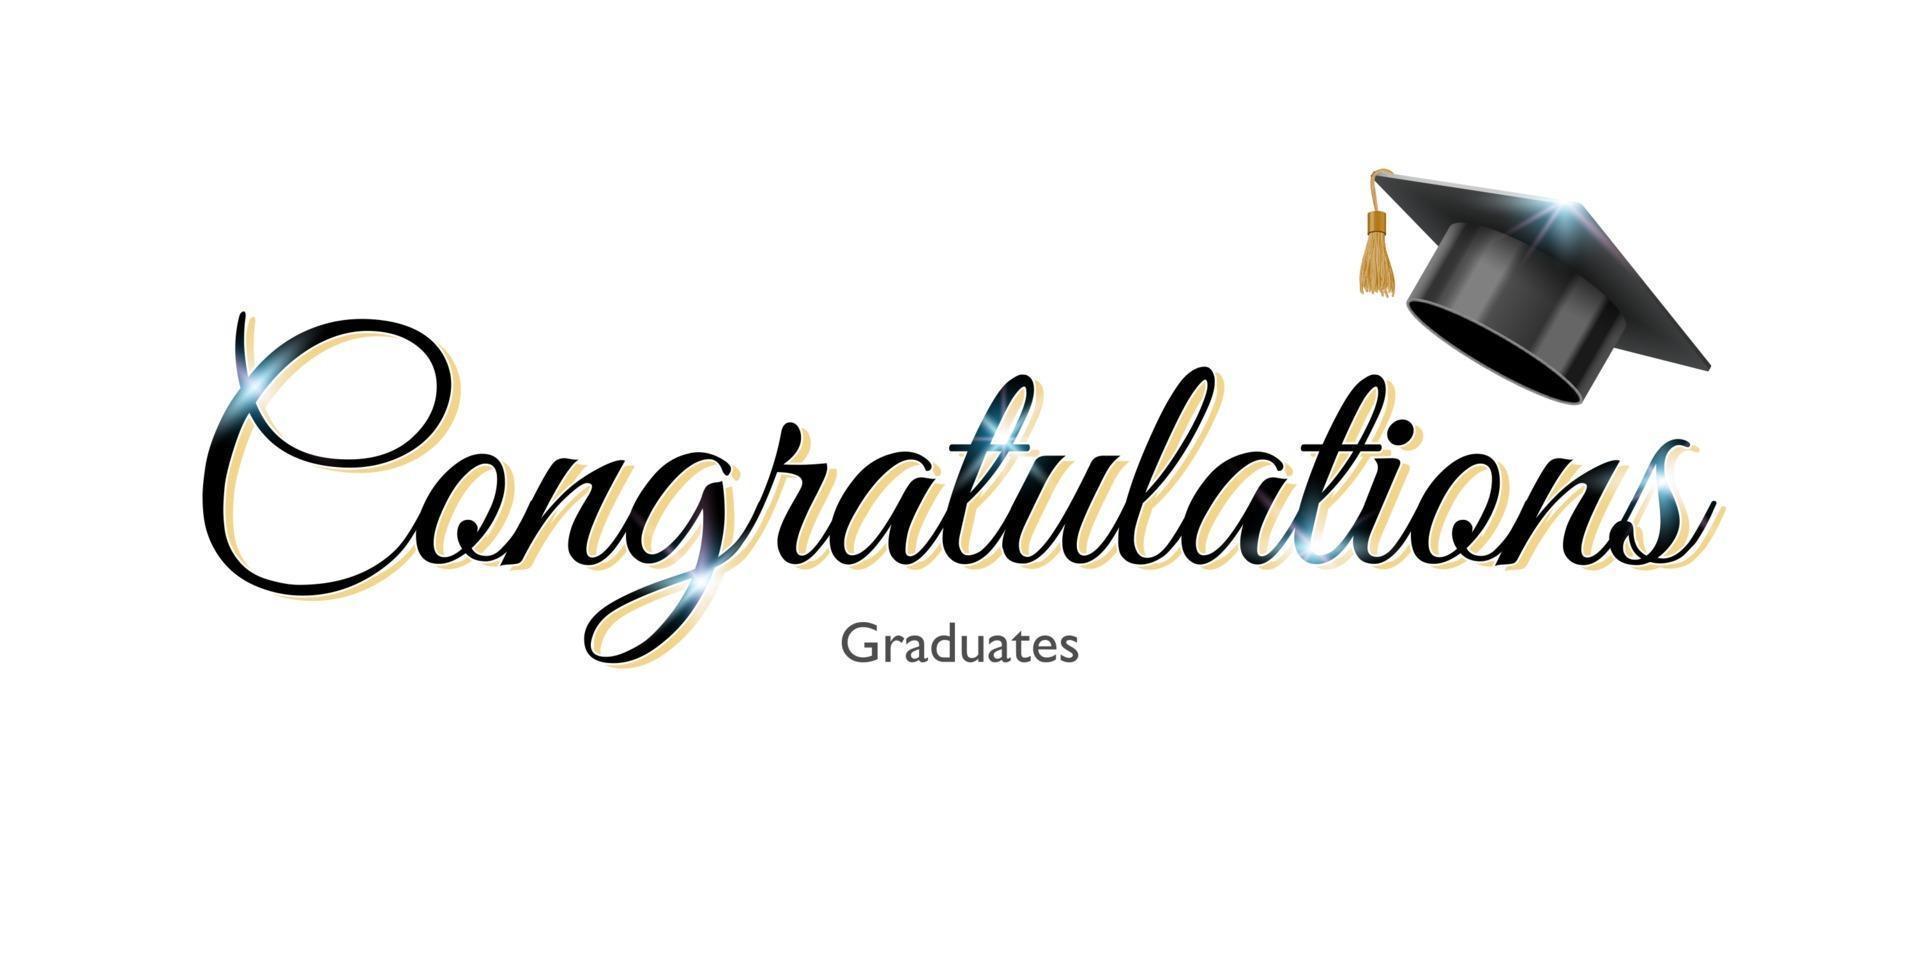 Félicitations signe pour l'obtention du diplôme avec une université diplômée ou une casquette noire d'université, illustration vectorielle vecteur